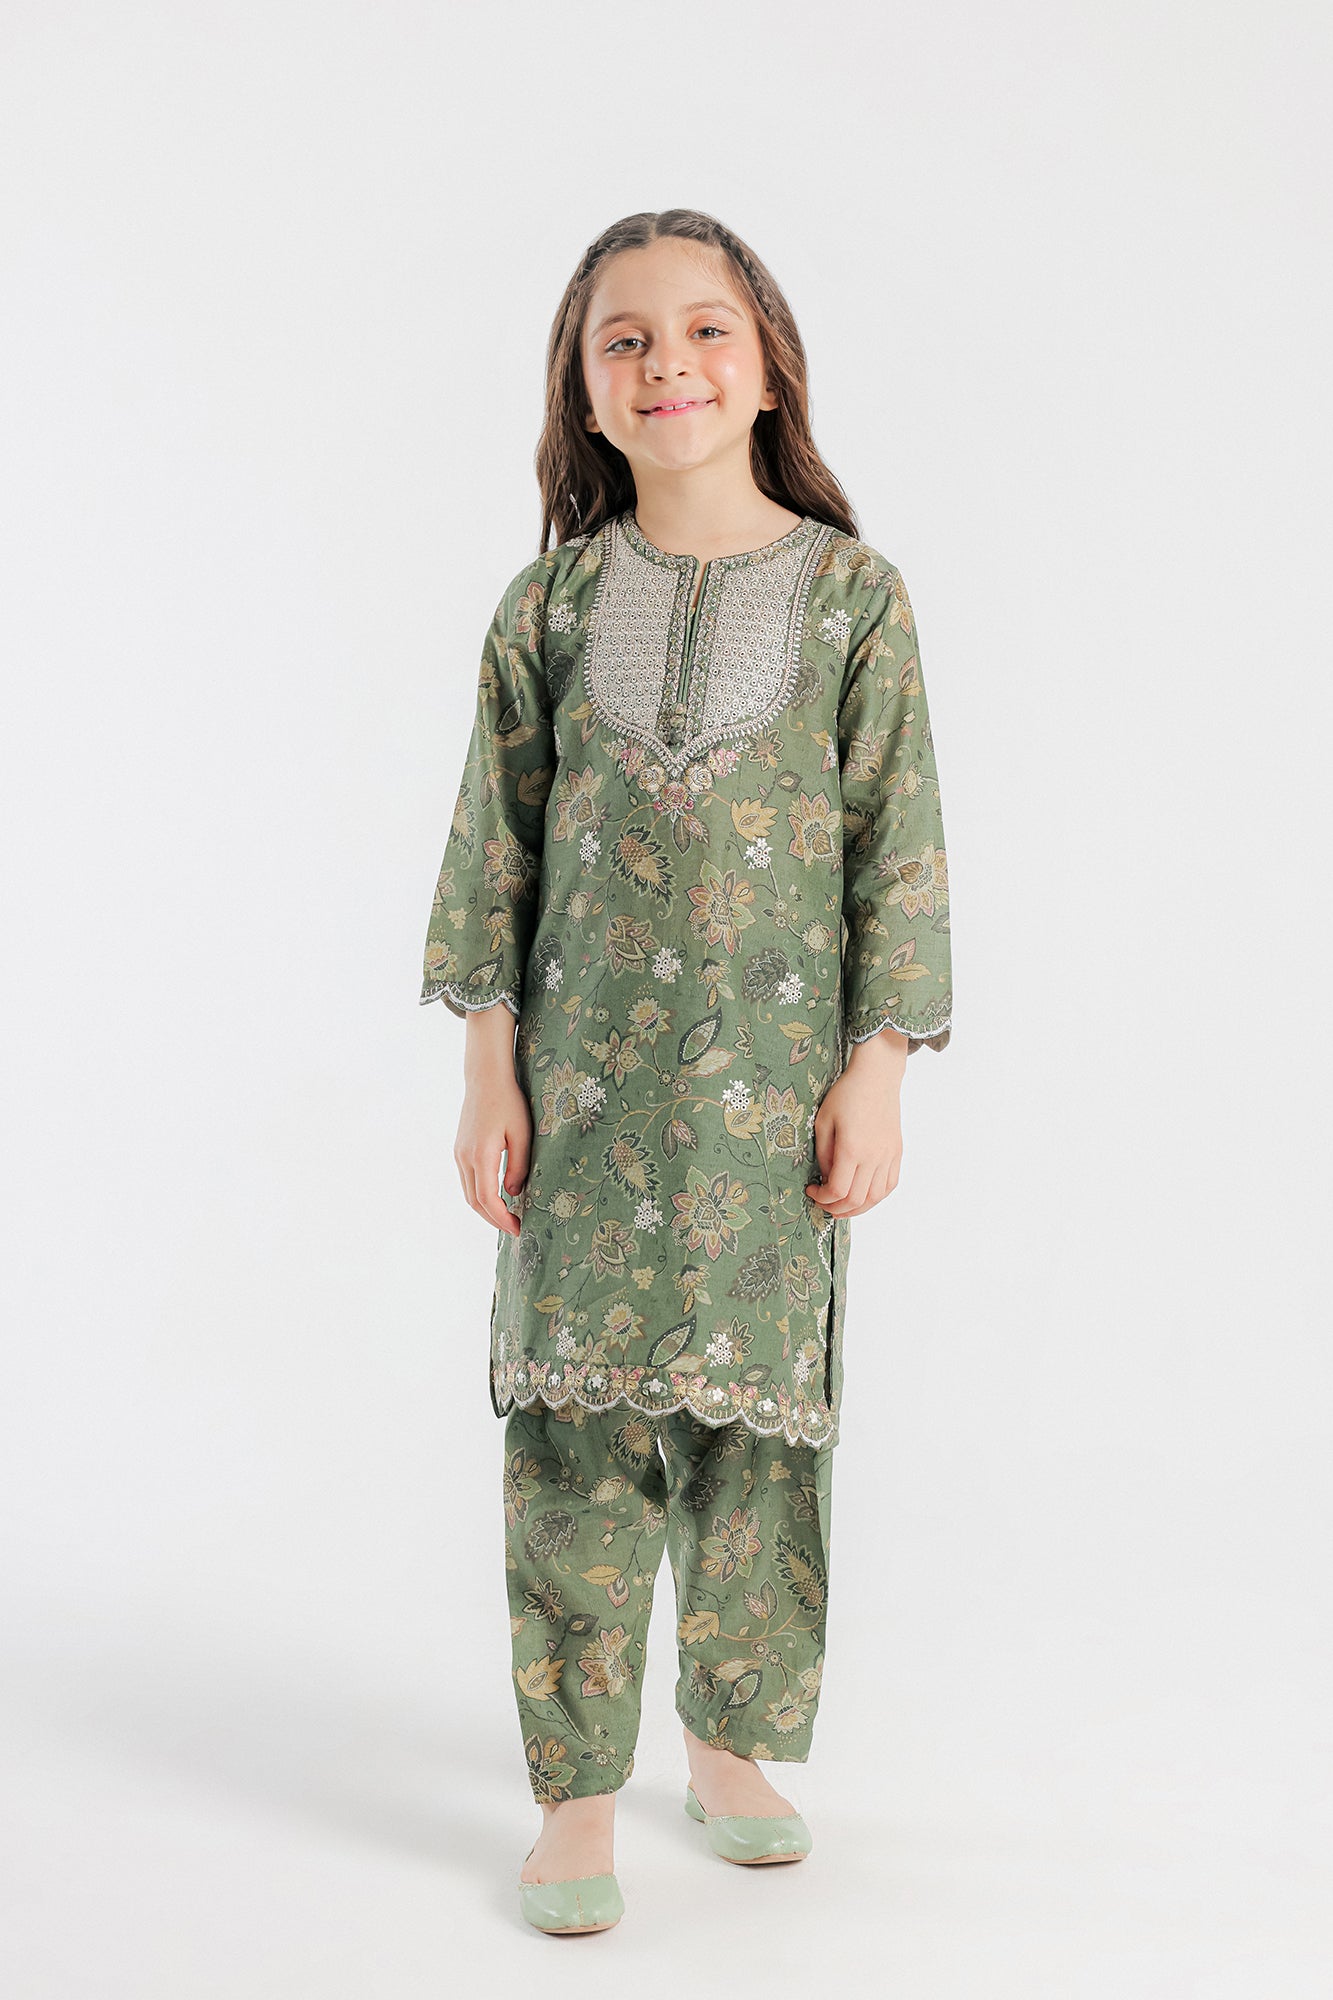 बच्चों की लड़कियों के लिए कपड़े, बच्चा बच्चा बच्चा बच्चा लड़की ग्रीष्मकालीन  ठोस रंग प्रिंट ड्रेस 1-4 साल : Amazon.in: कपड़े और एक्सेसरीज़